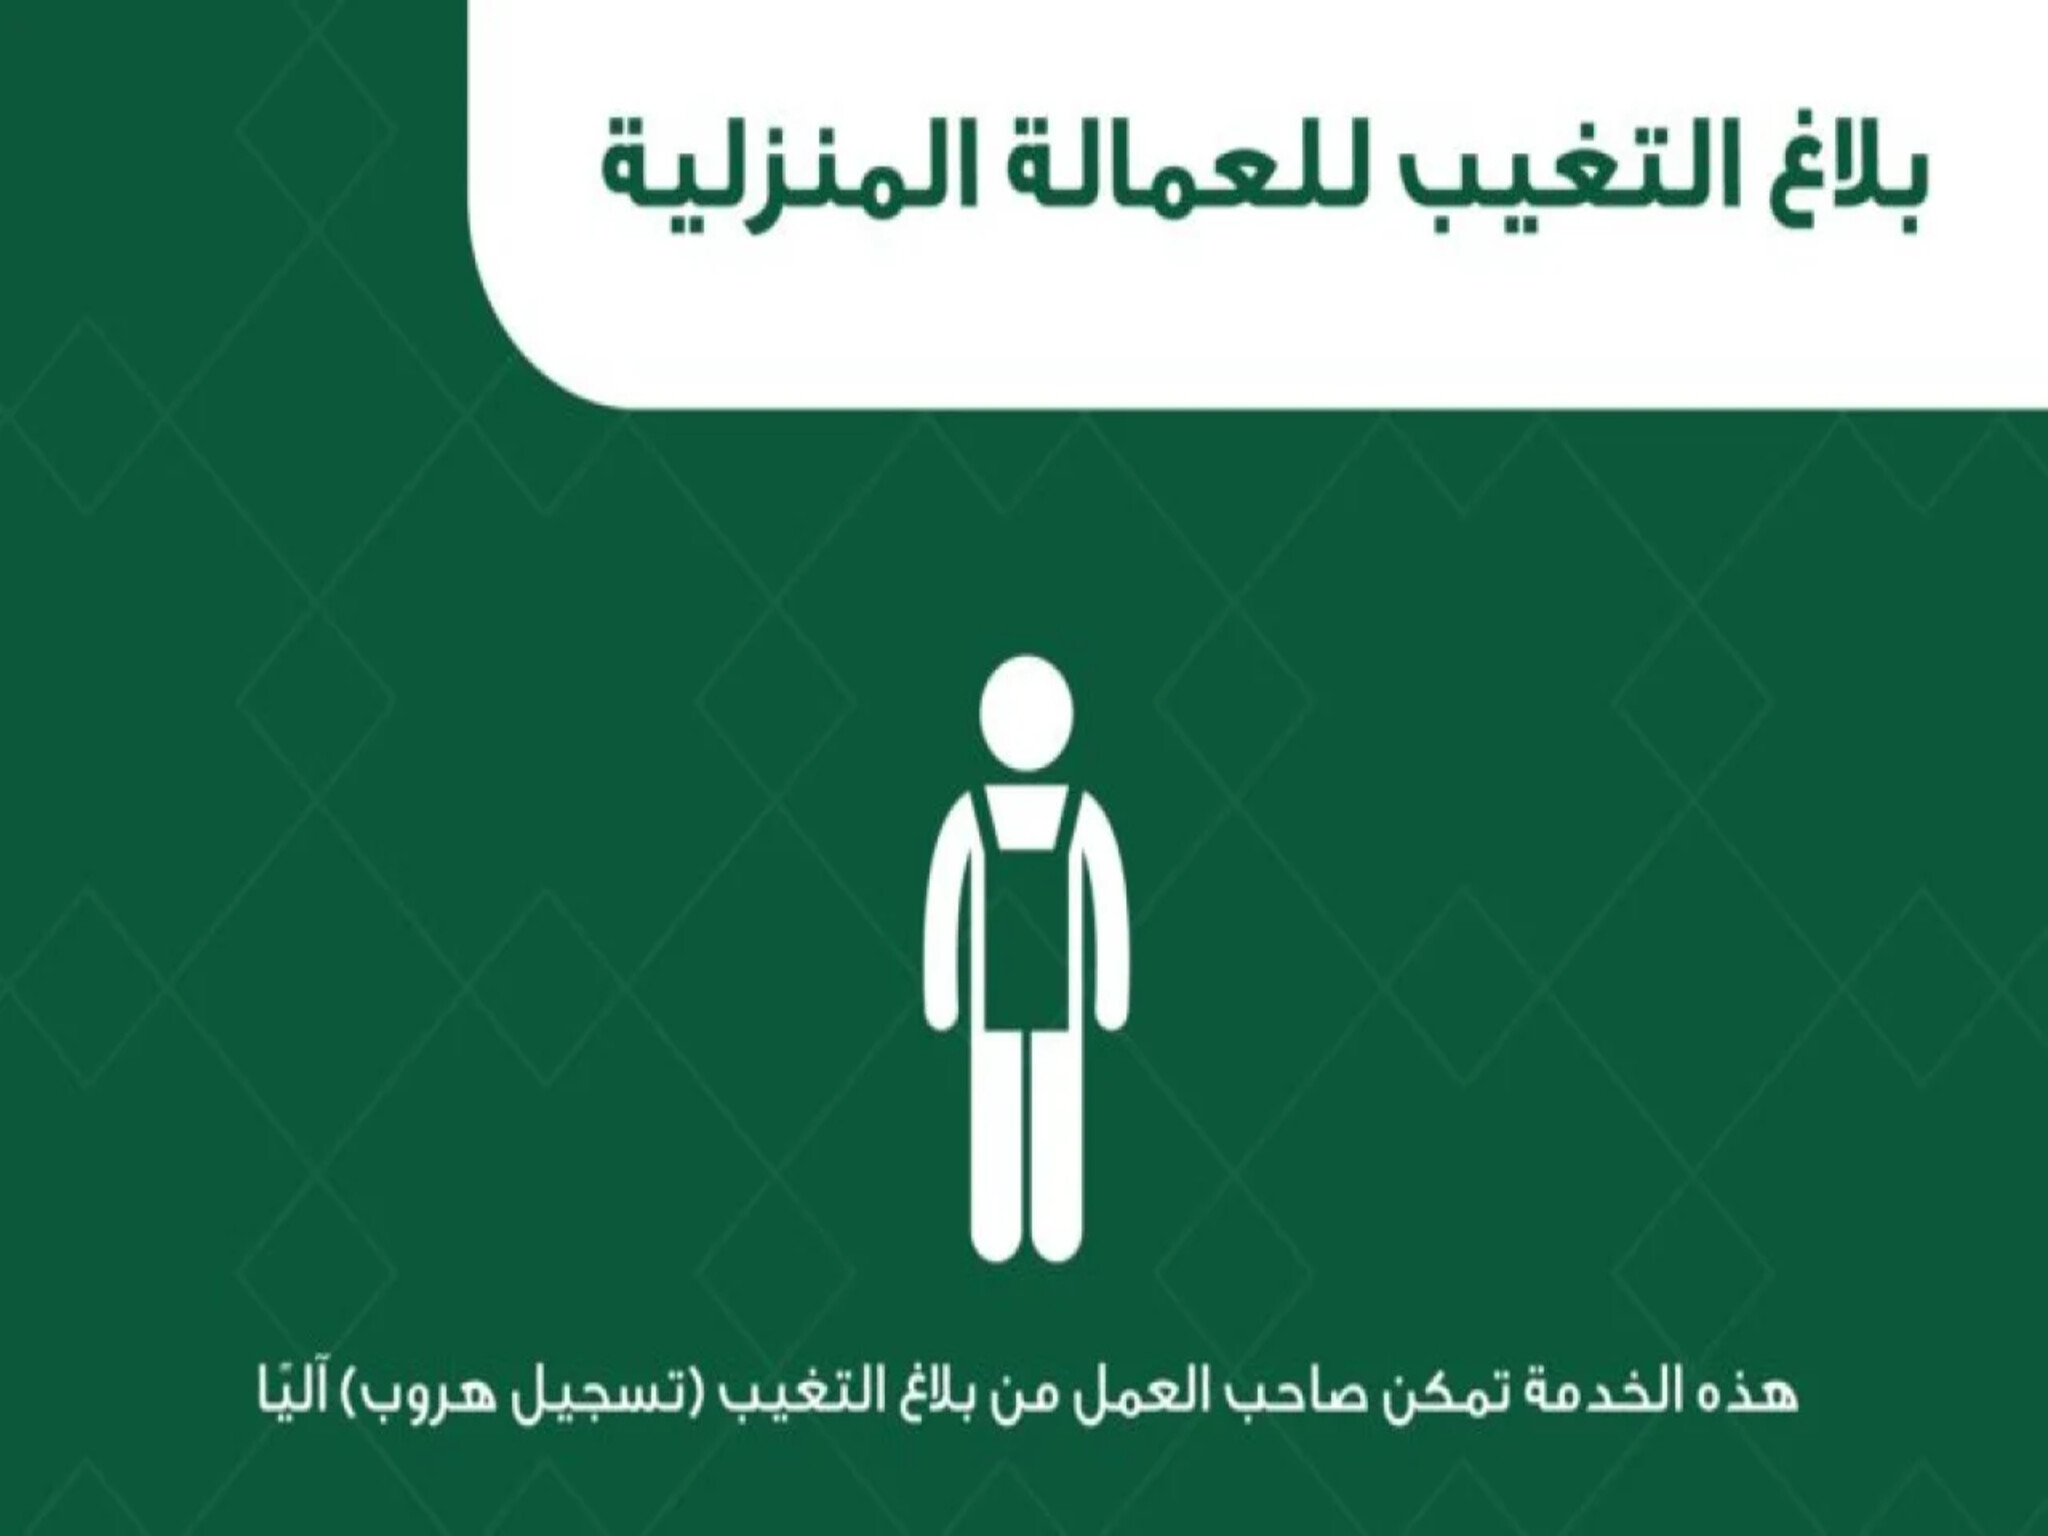 خطوات تسجيل بلاغات تغيب العمالة المنزلية بالمملكة السعودية 1445هـ